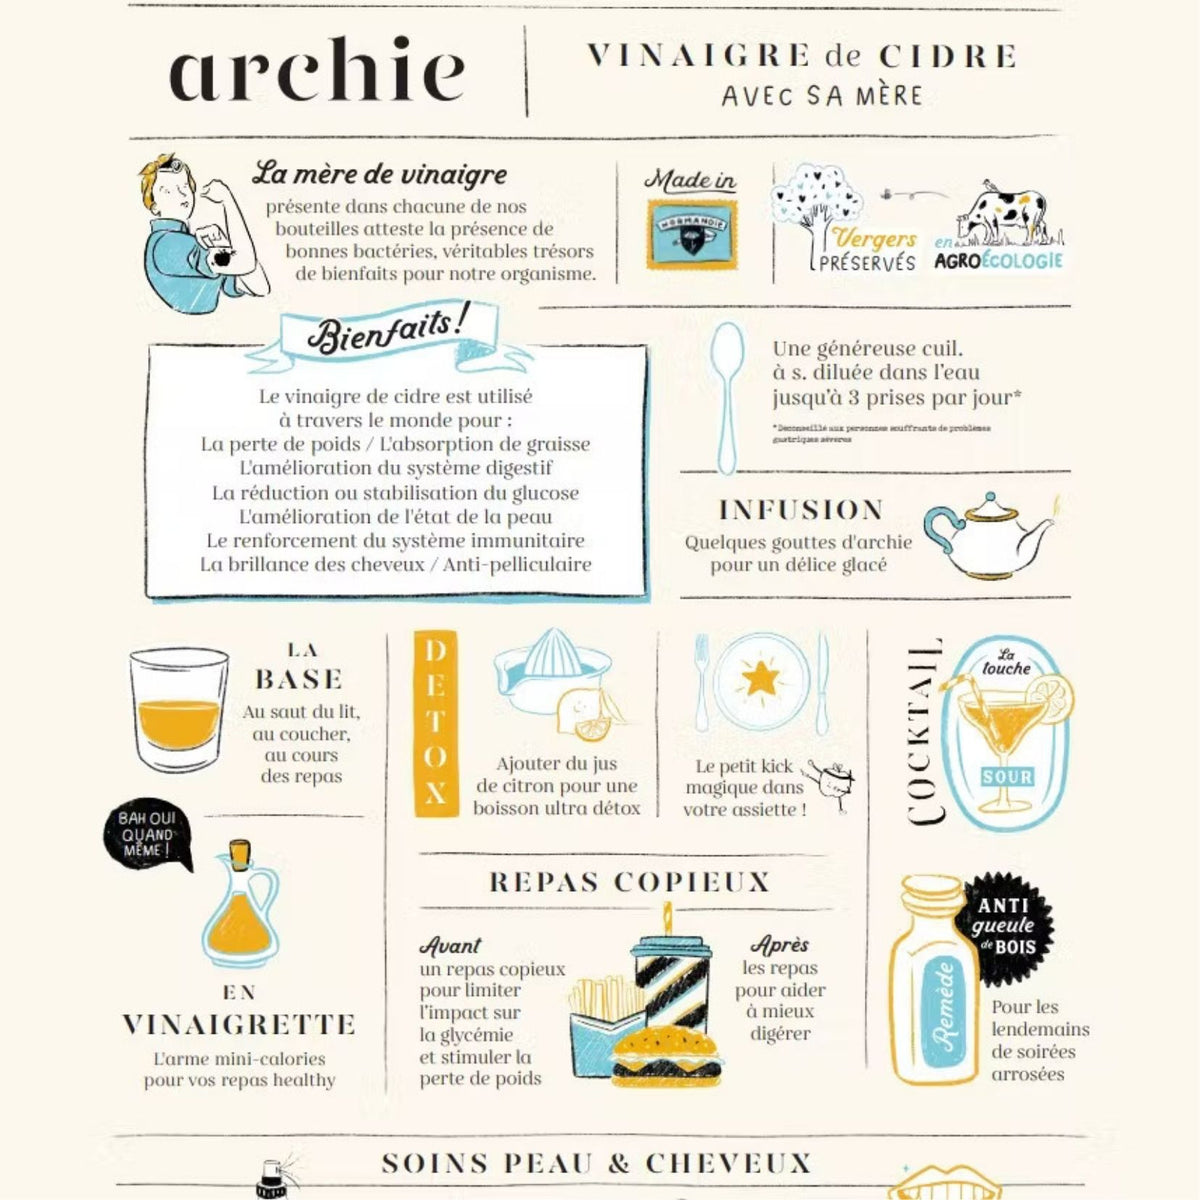 Vinaigre de cidre - Archie – BEST FIT